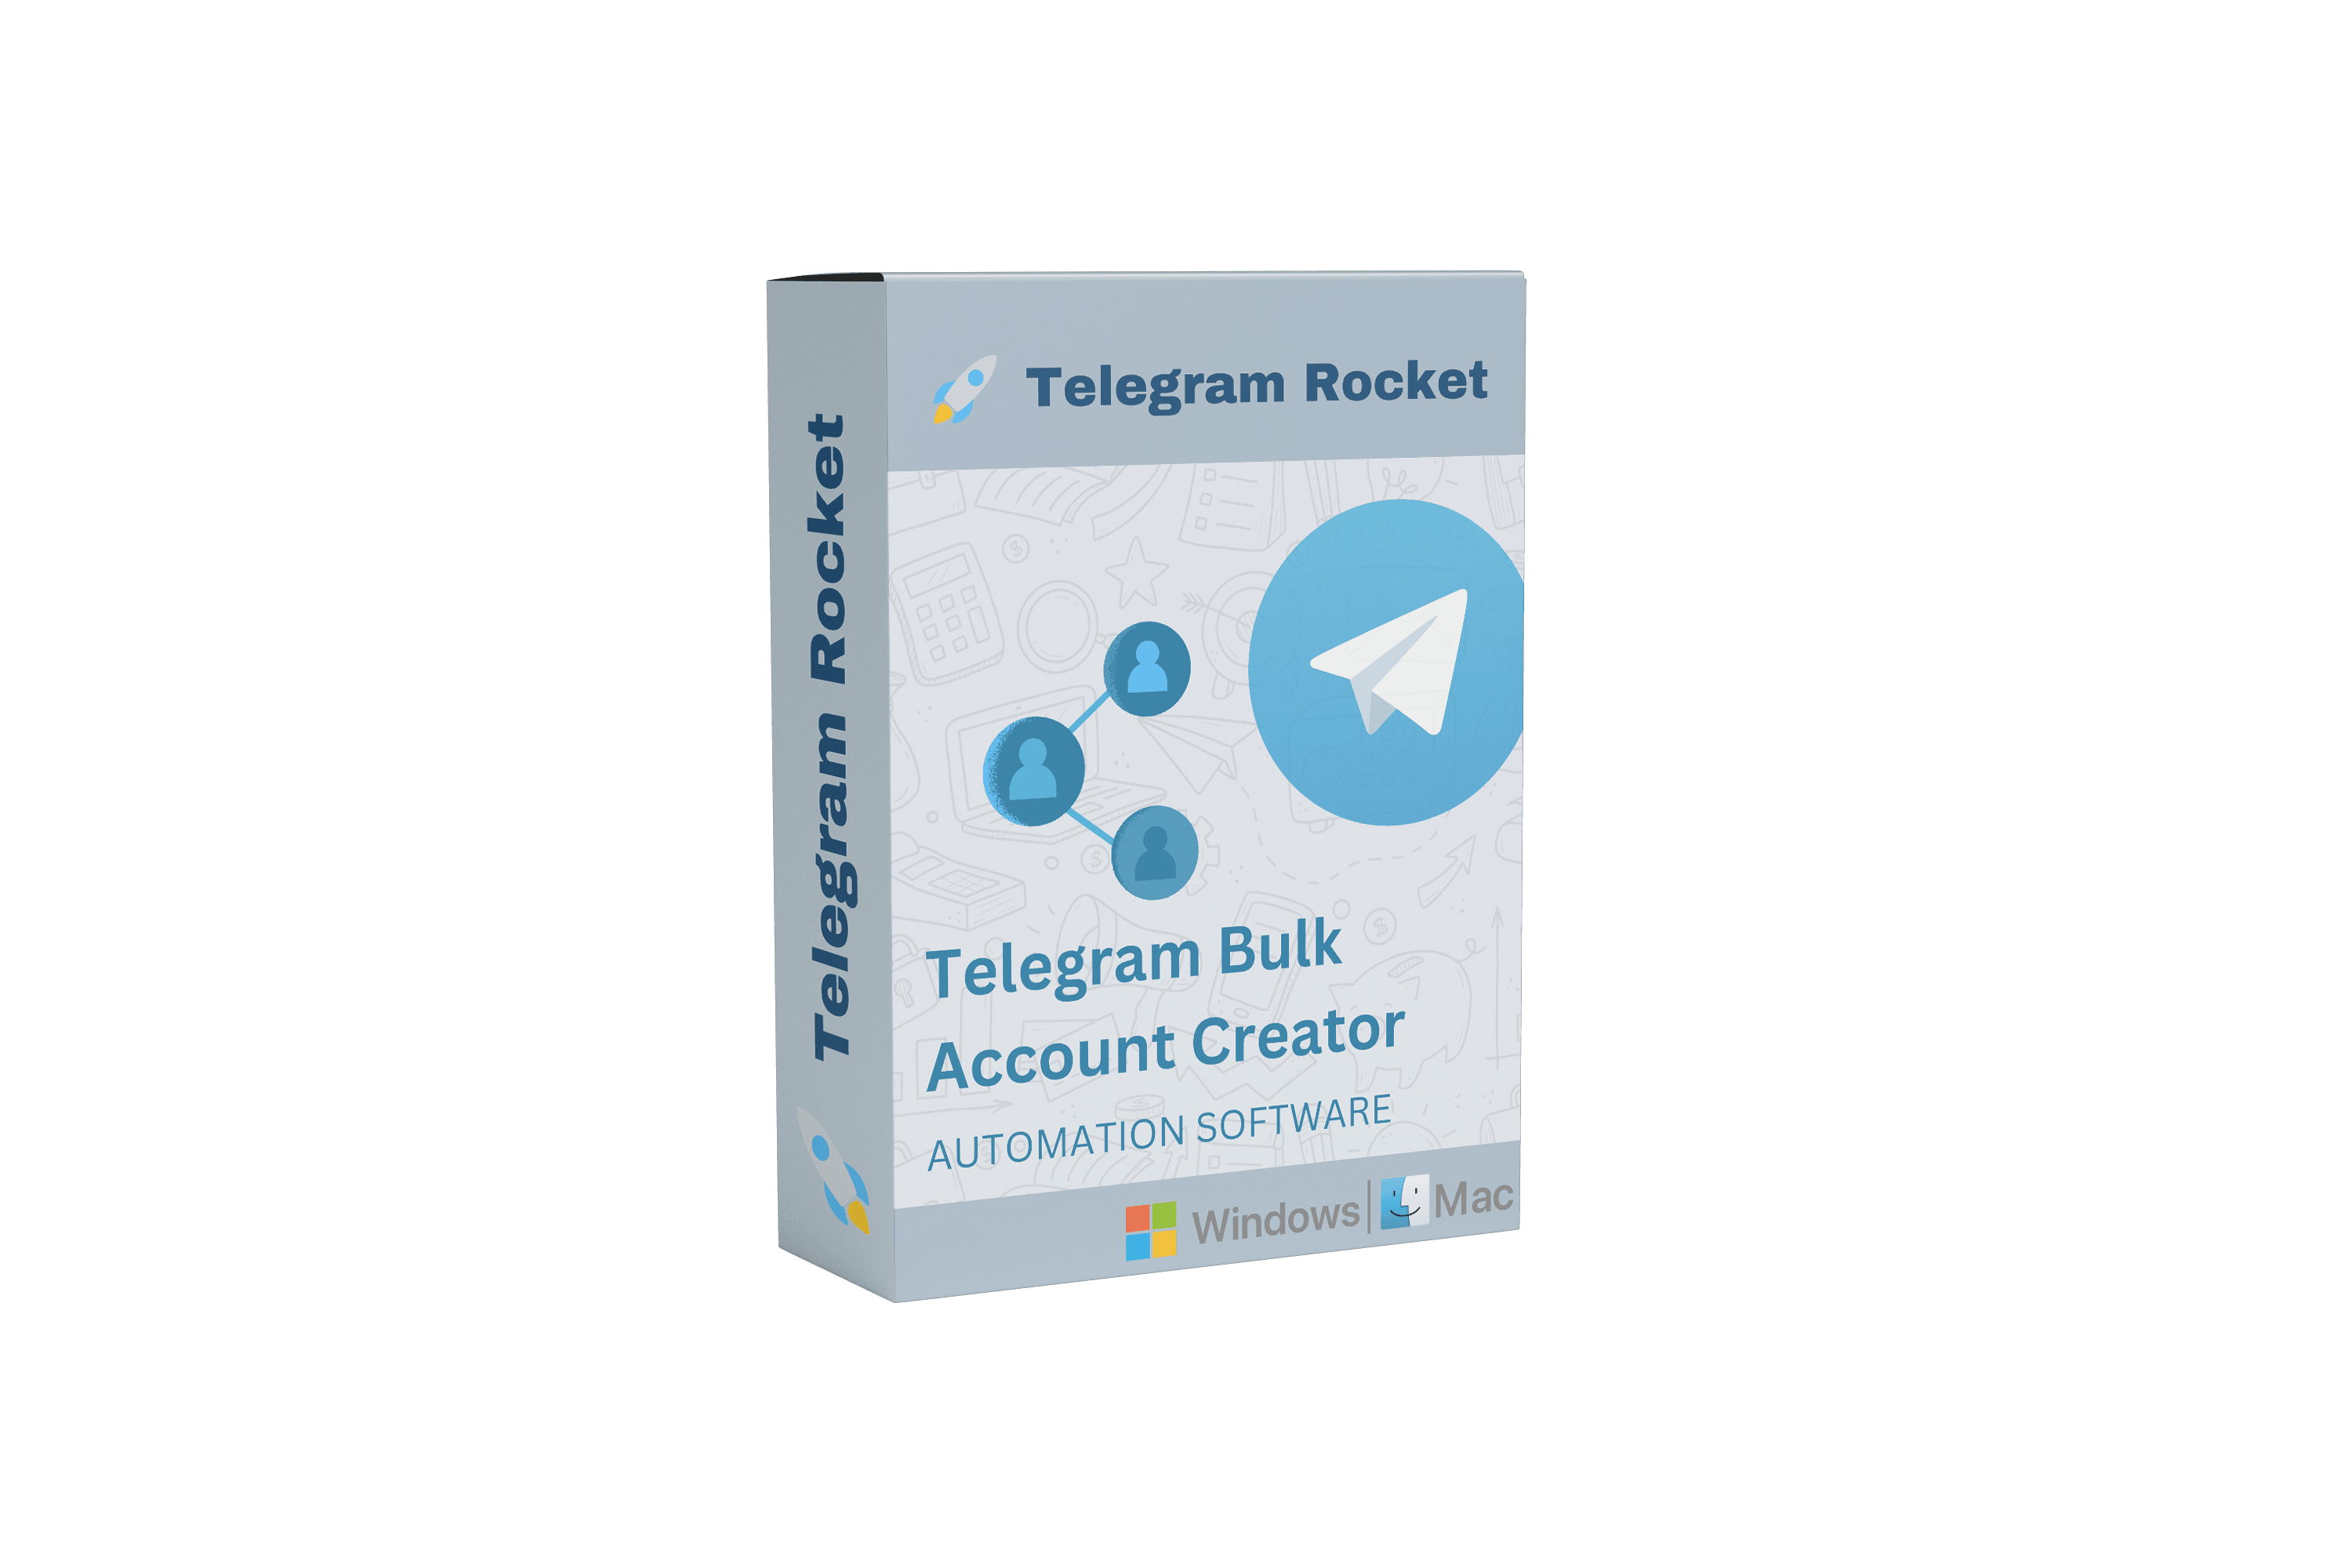 telegram bulk account creator